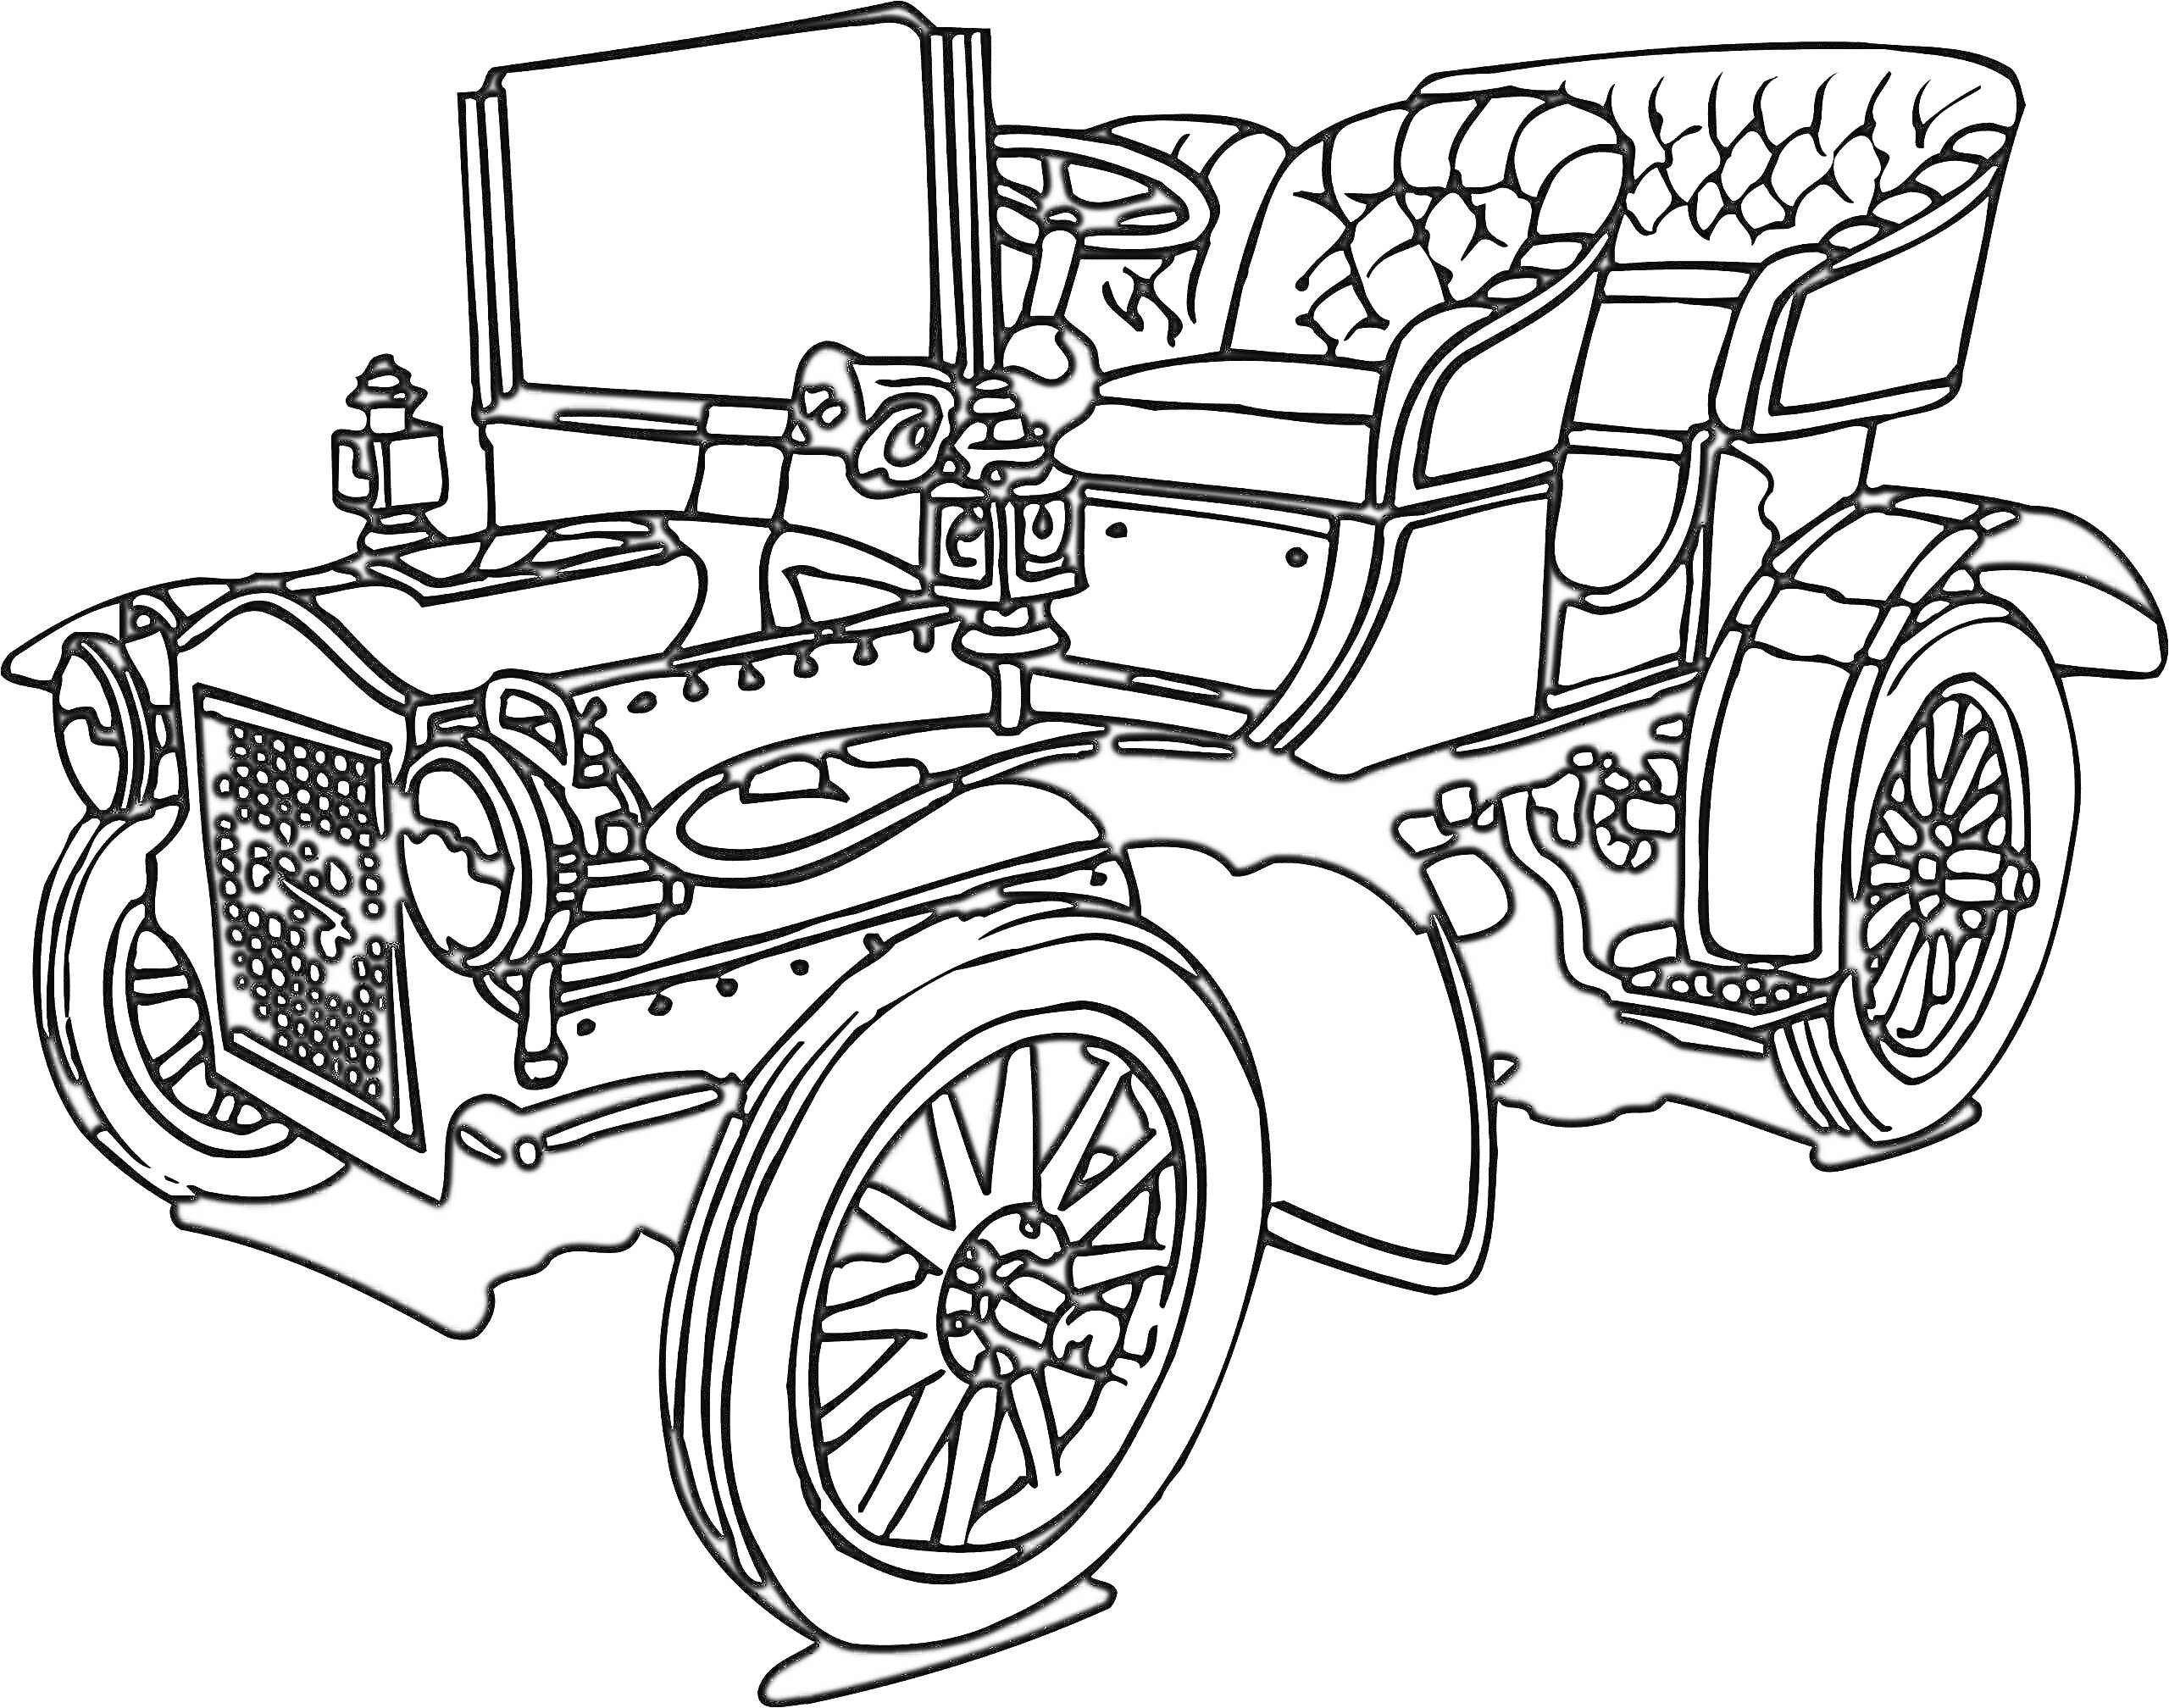 Ретро автомобиль с открытым верхом, два сиденья, передние и задние колеса, руль, декоративные элементы на капоте